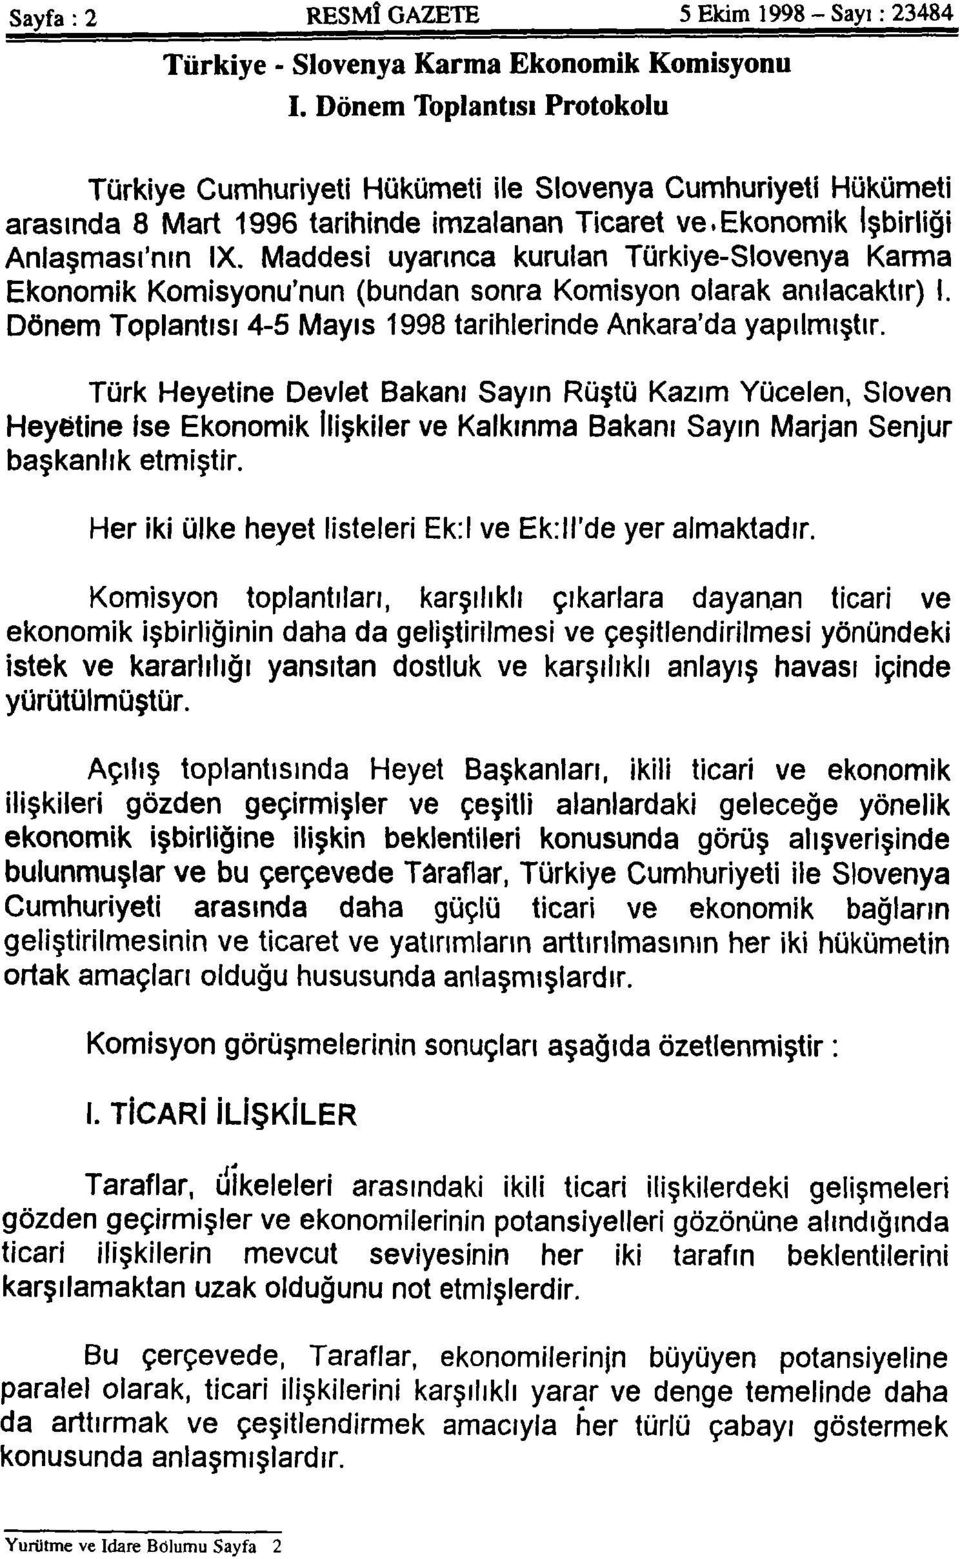 Maddesi uyarınca kurulan Türkiye-Slovenya Karma Ekonomik Komisyonu'nun (bundan sonra Komisyon olarak anılacaktır) I. Dönem Toplantısı 4-5 Mayıs 1998 tarihlerinde Ankara'da yapılmıştır.